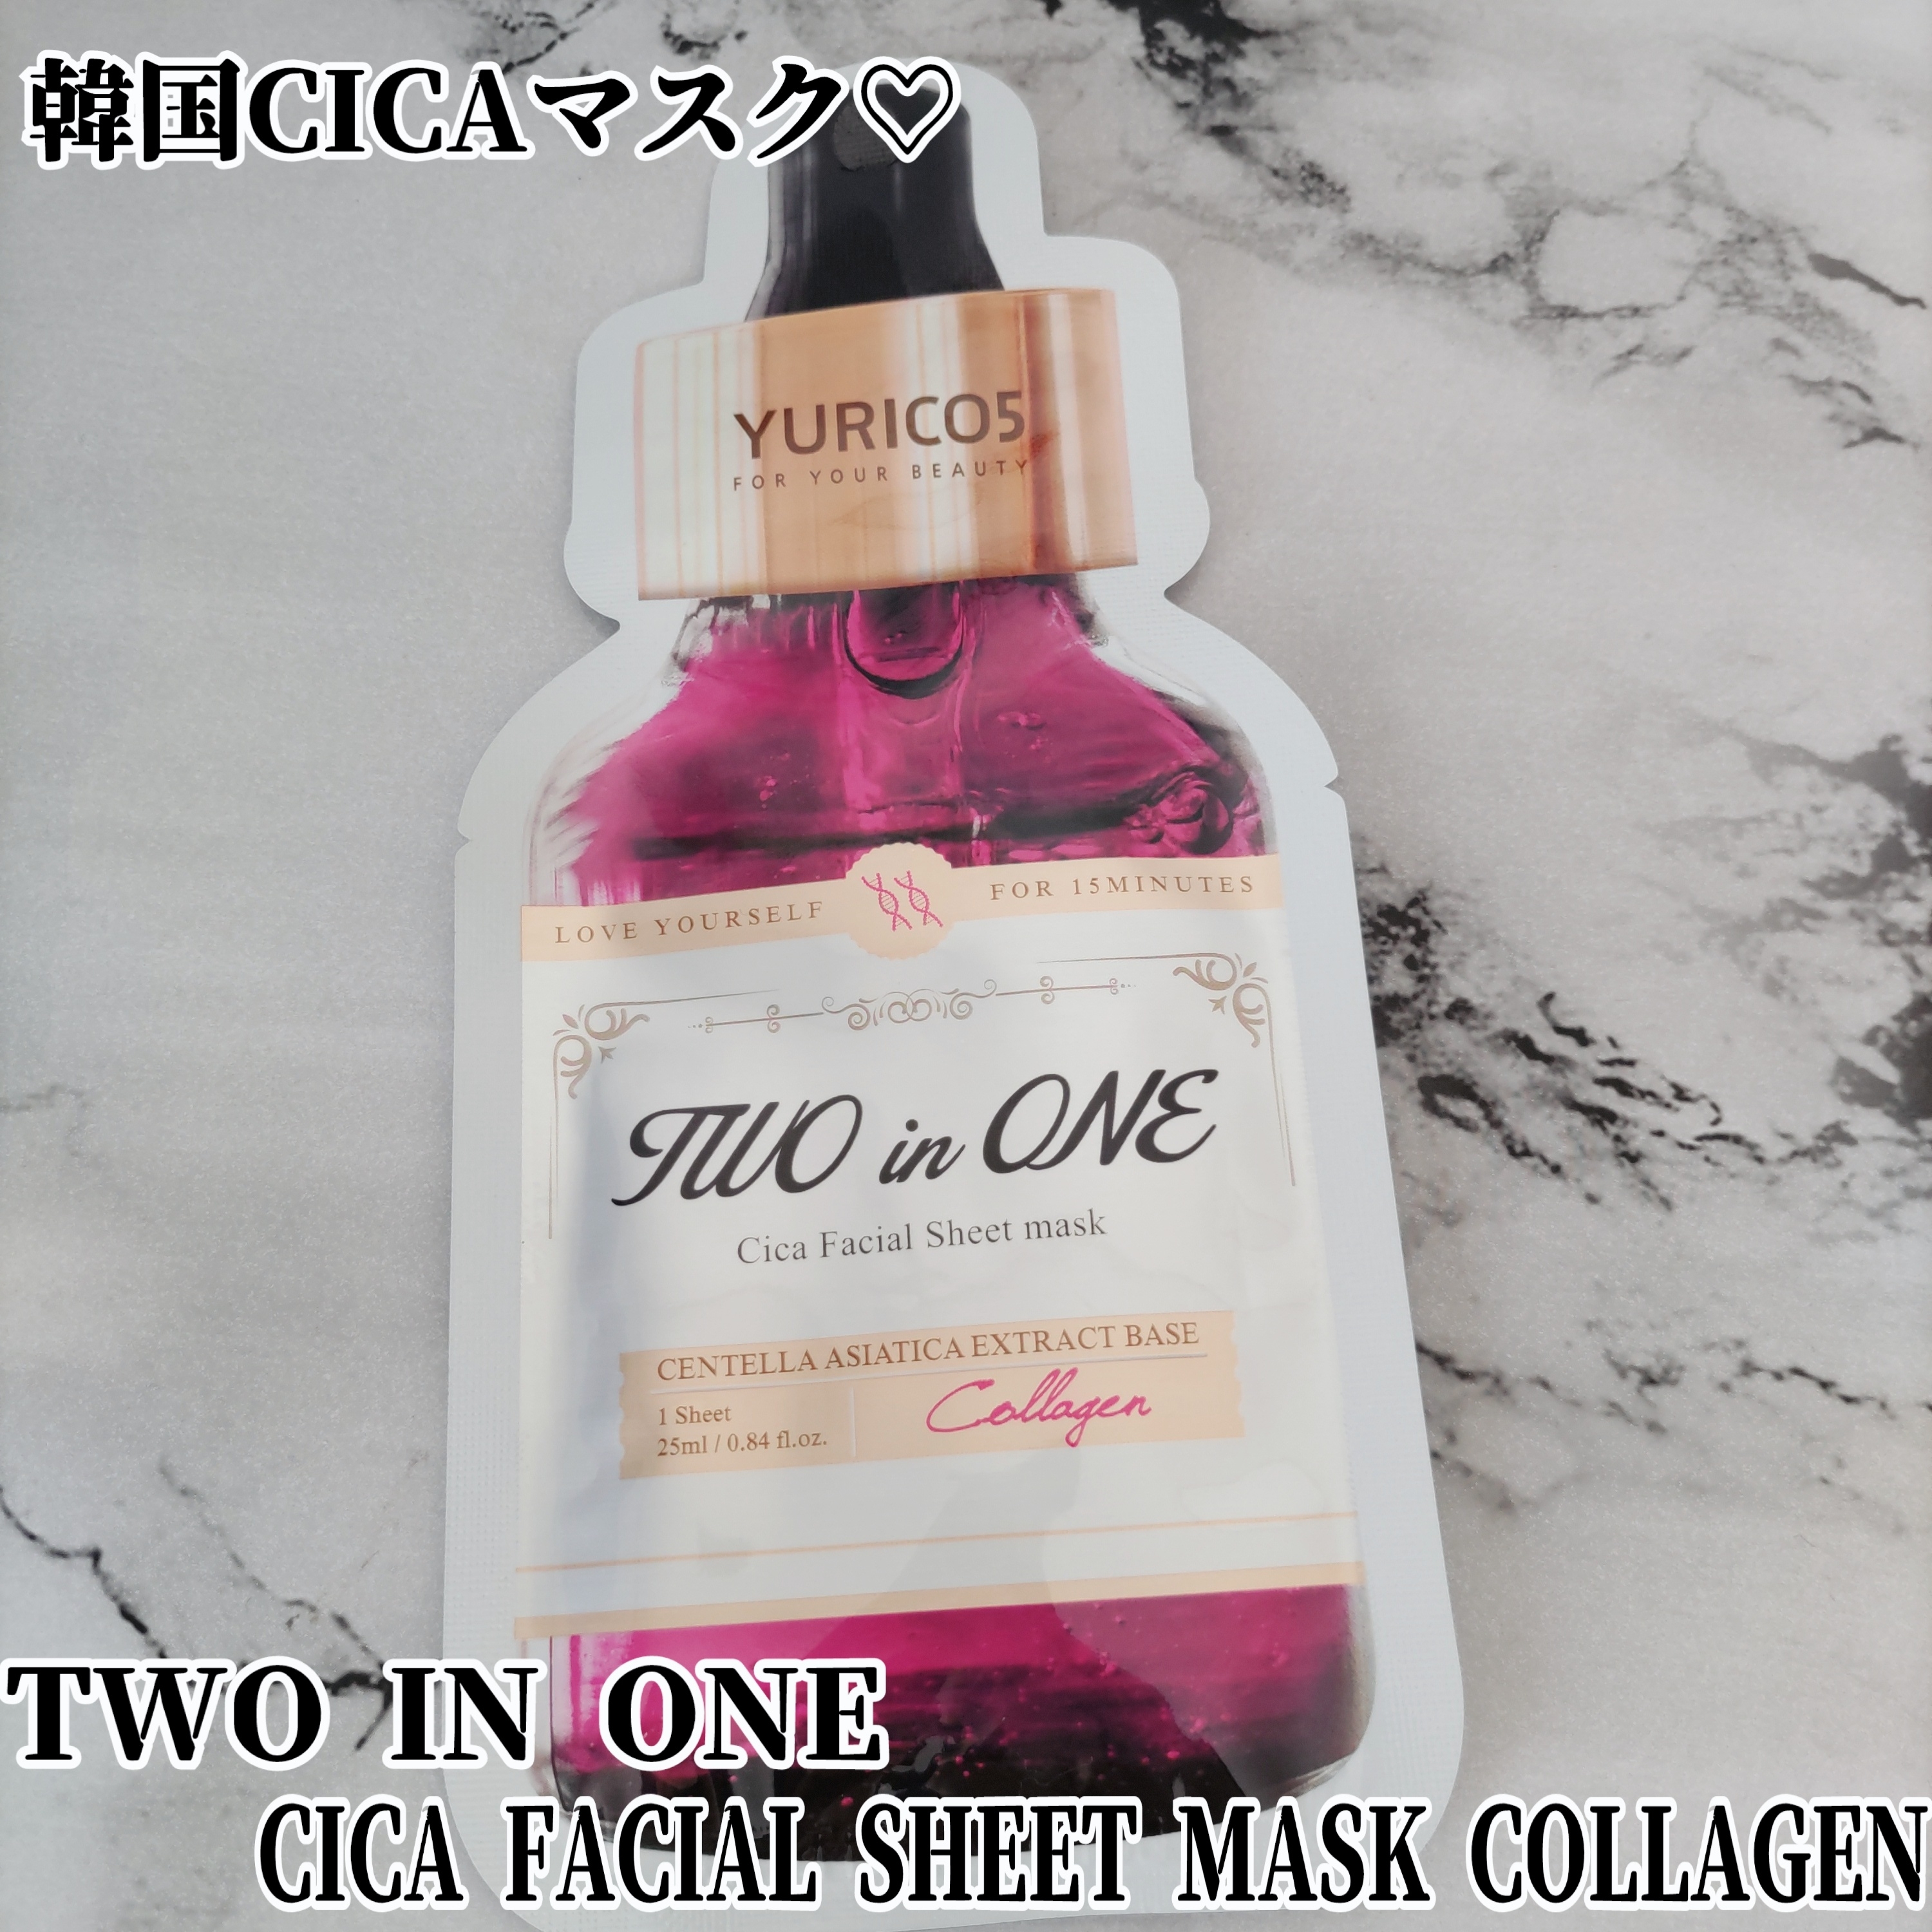 YURICO5(ユリコス) 2in1 CICA フェイシャル シートマスク コラーゲンに関するYuKaRi♡さんの口コミ画像1